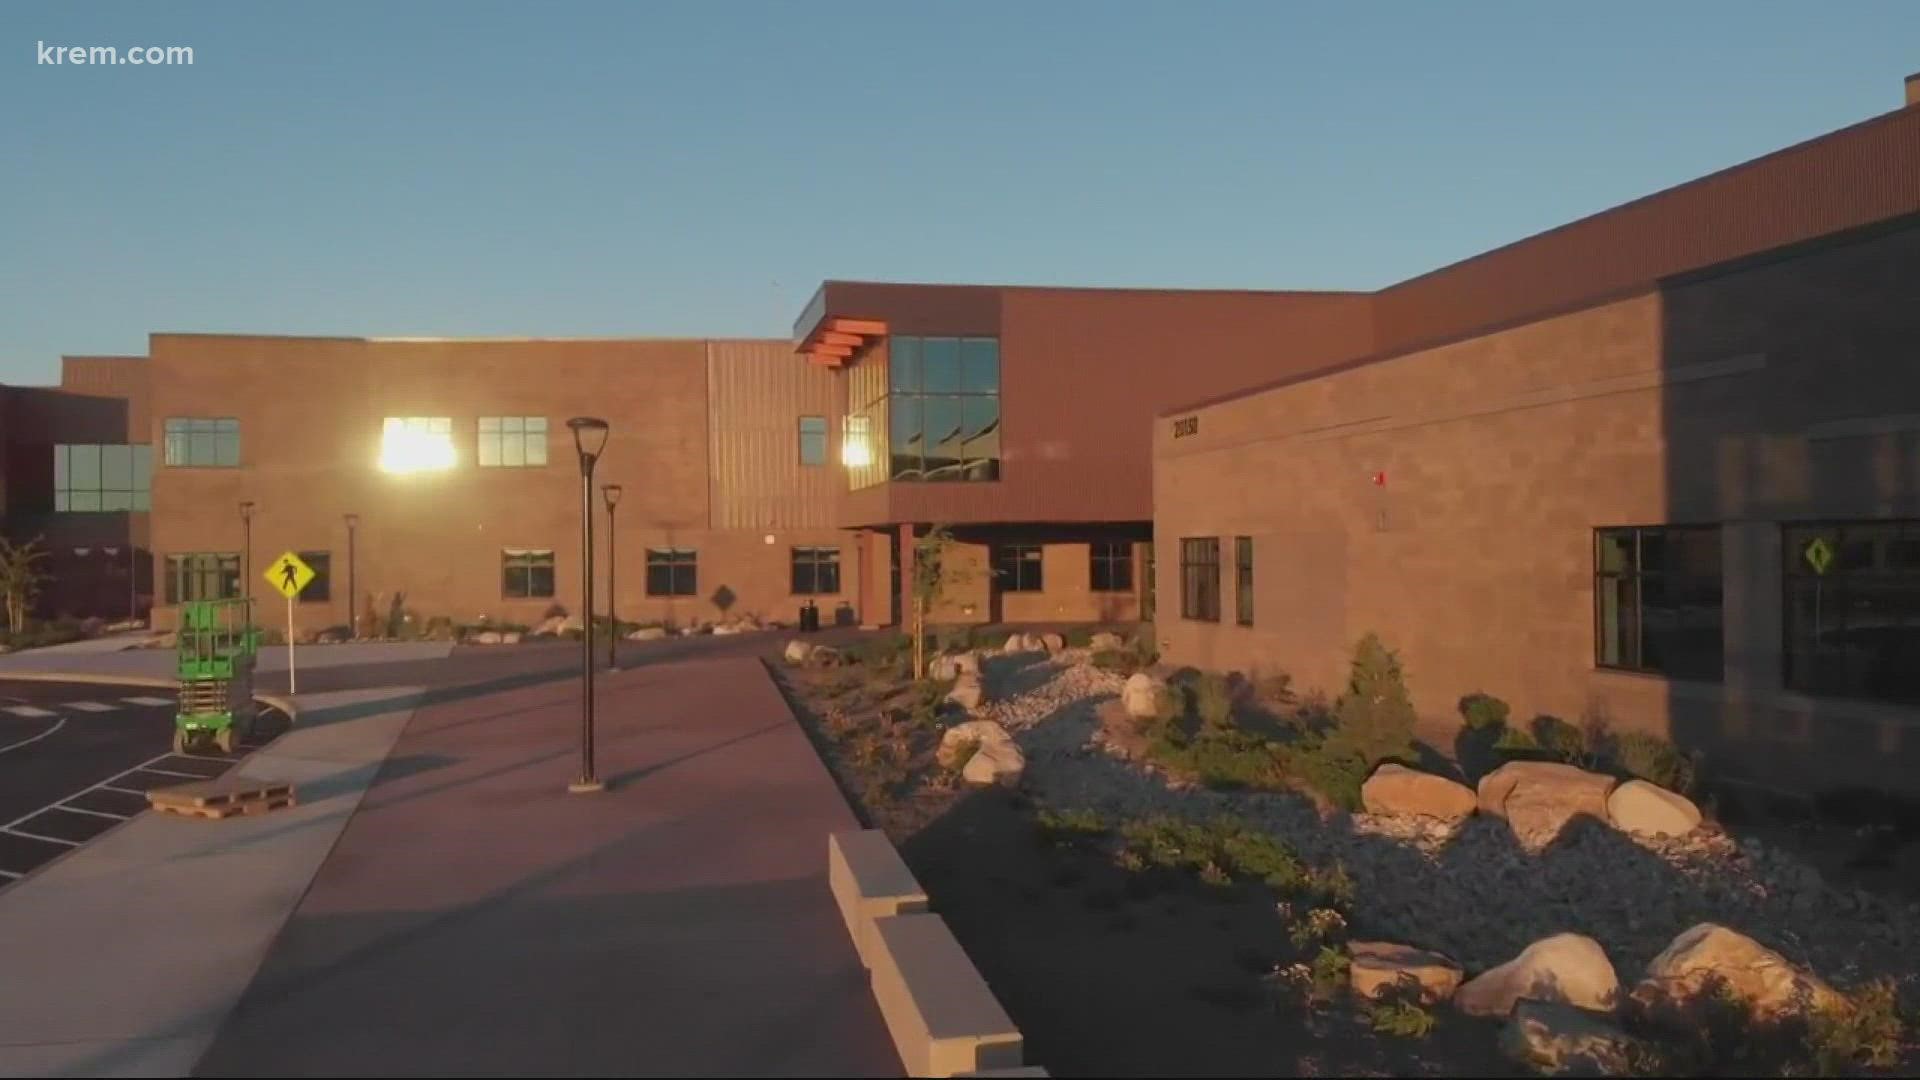 Back to School: a look inside New Ridgeline High School in Spokane Valley